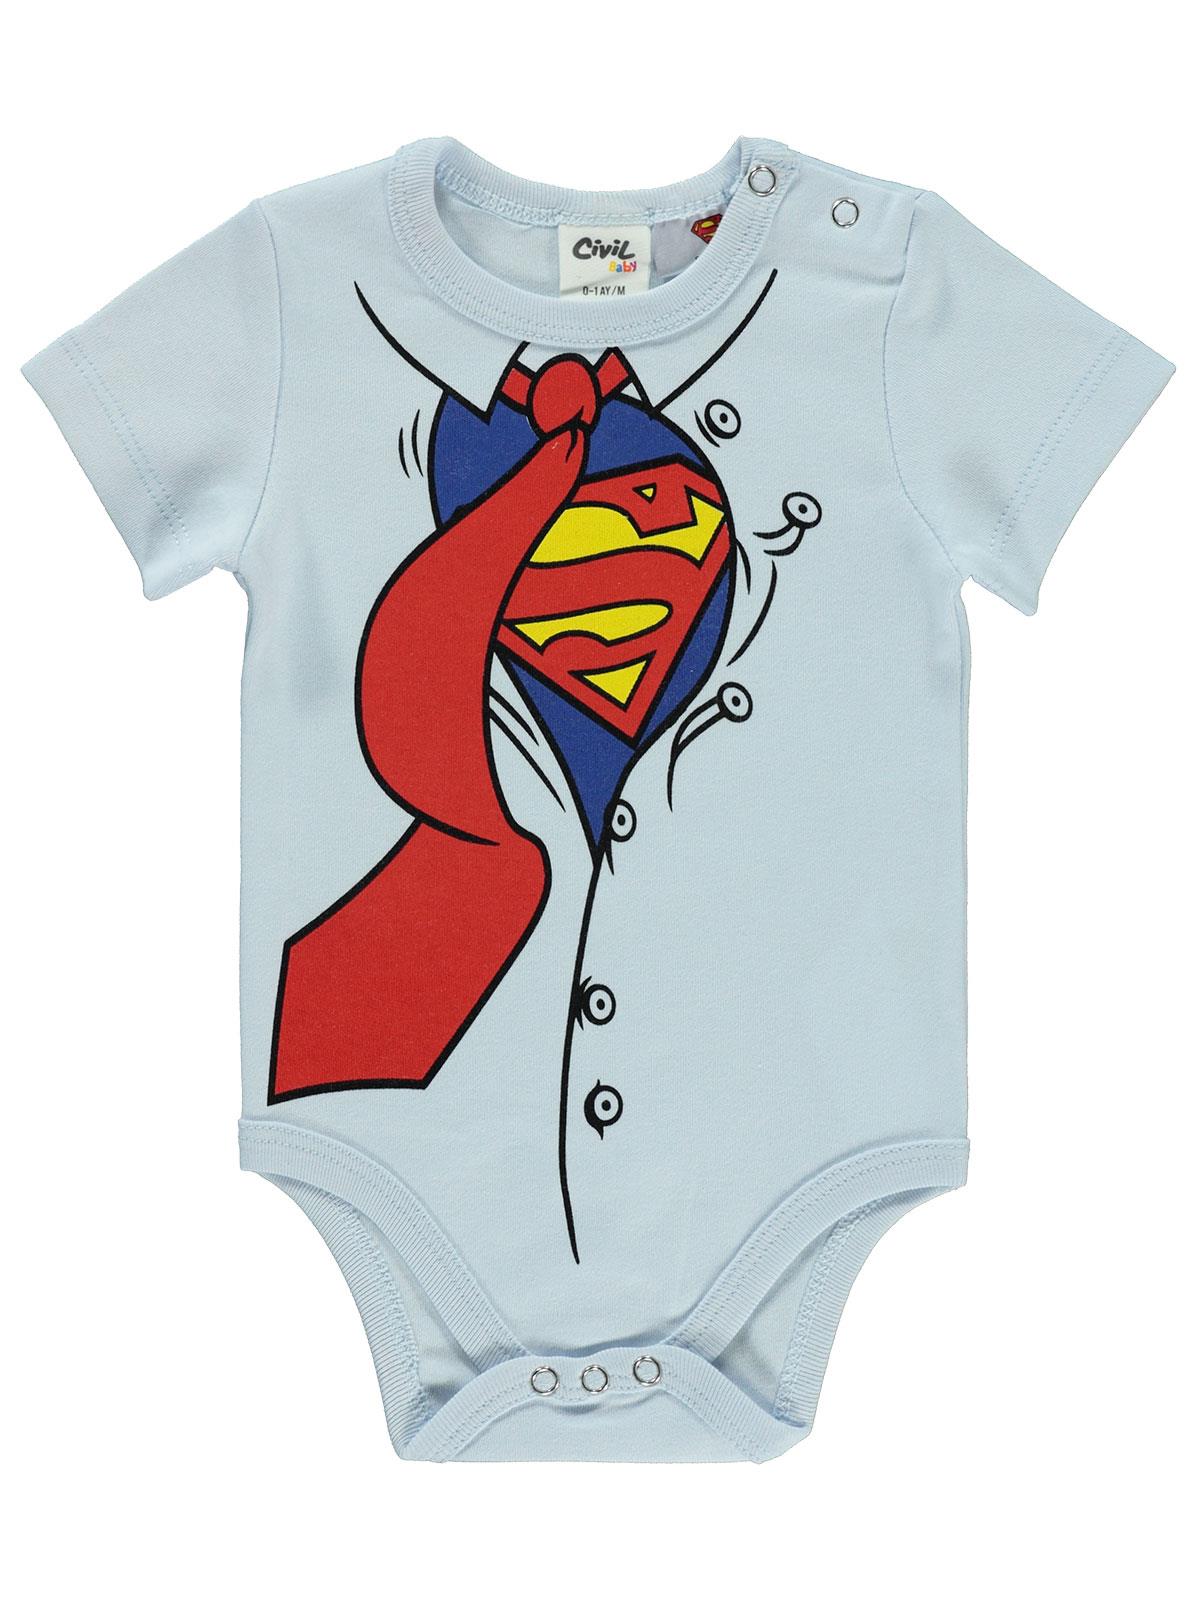 Süperman Erkek Bebek Çıtçıtlı Badi 0-18 Ay Mavi